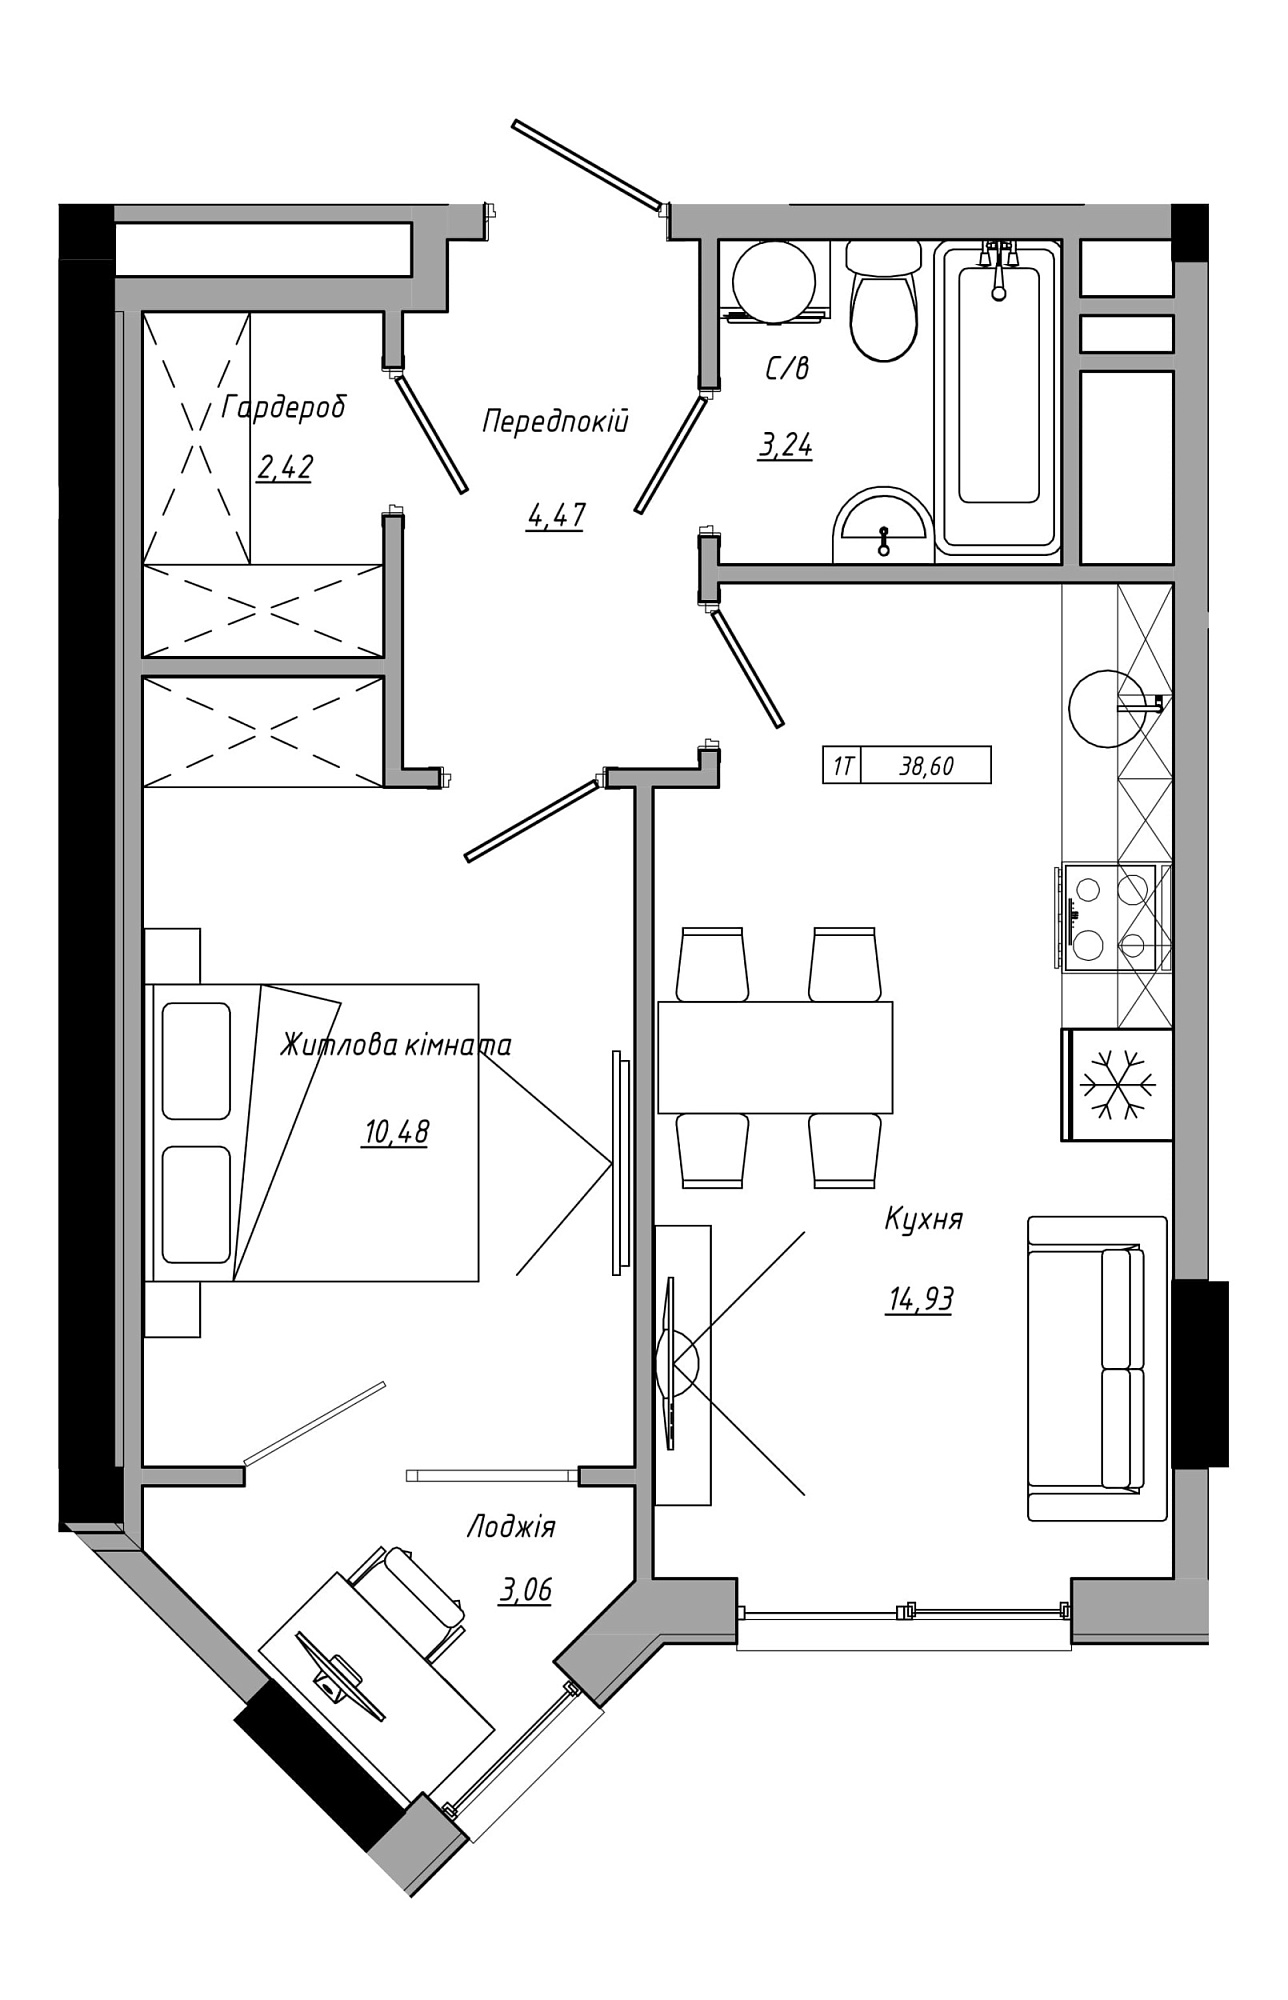 Планировка 1-к квартира площей 38.6м2, AB-21-07/00022.